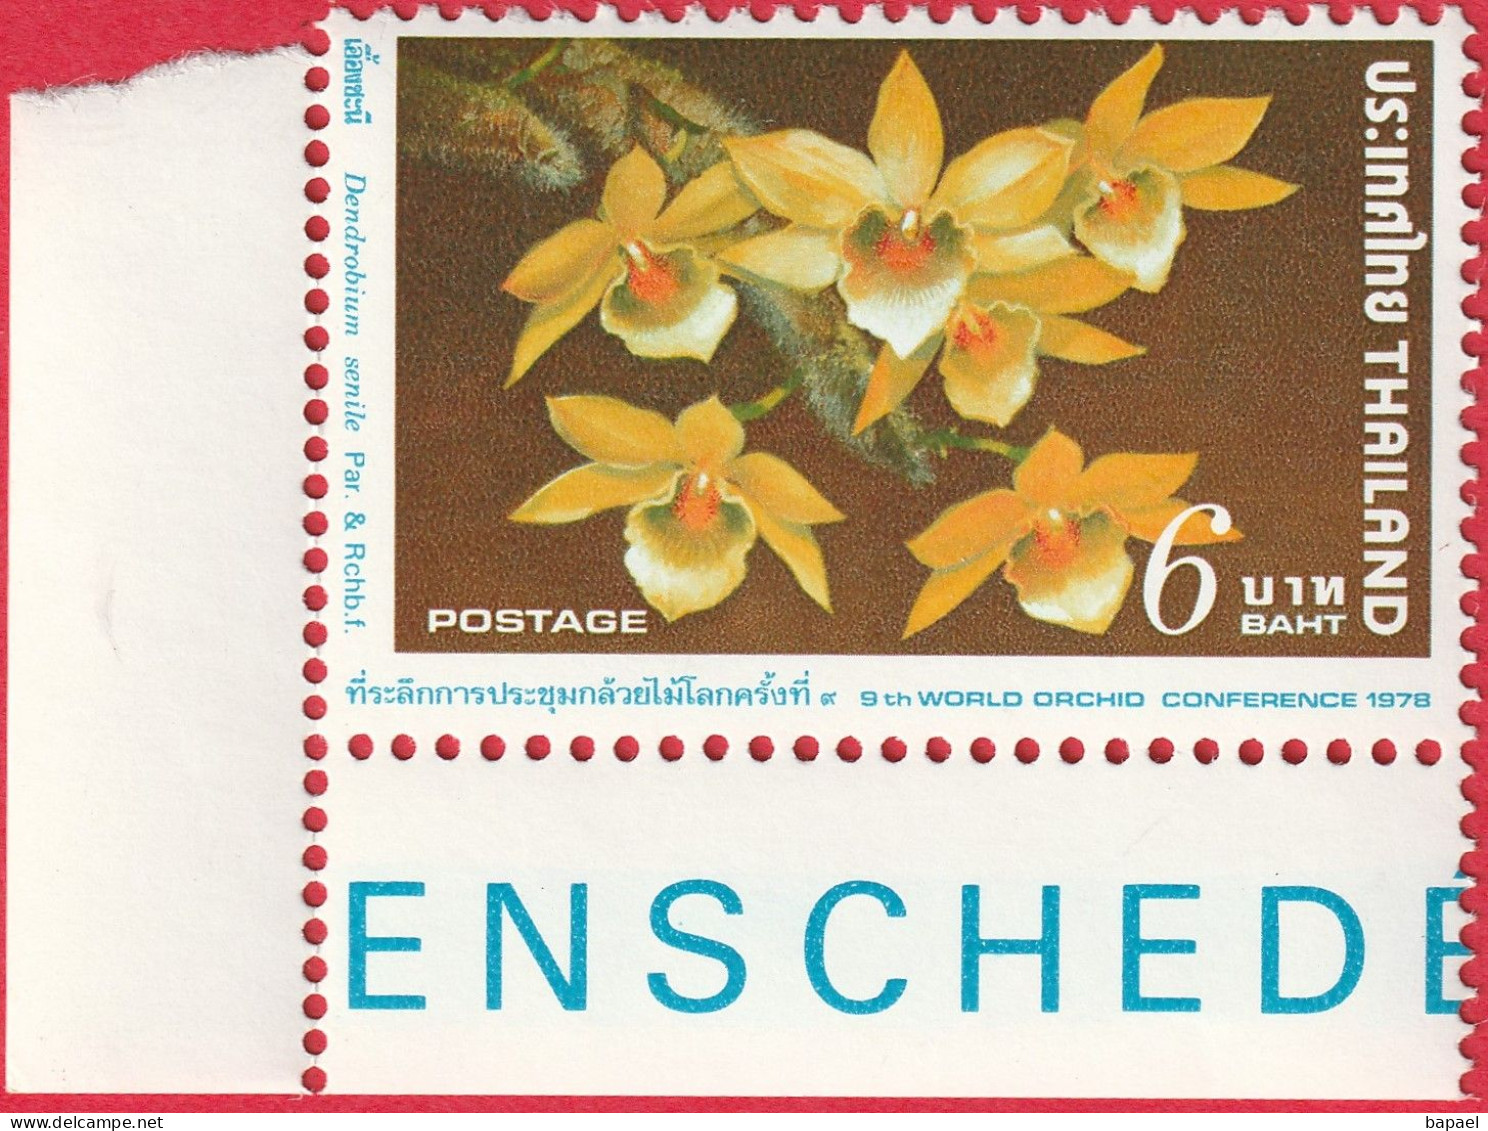 N° Yvert & Tellier 841 - Timbre De Thaïlande (1978) (Neuf - **) - 9ème Conférence Mondiale Orchidées (Dendrobiome Senile - Tailandia